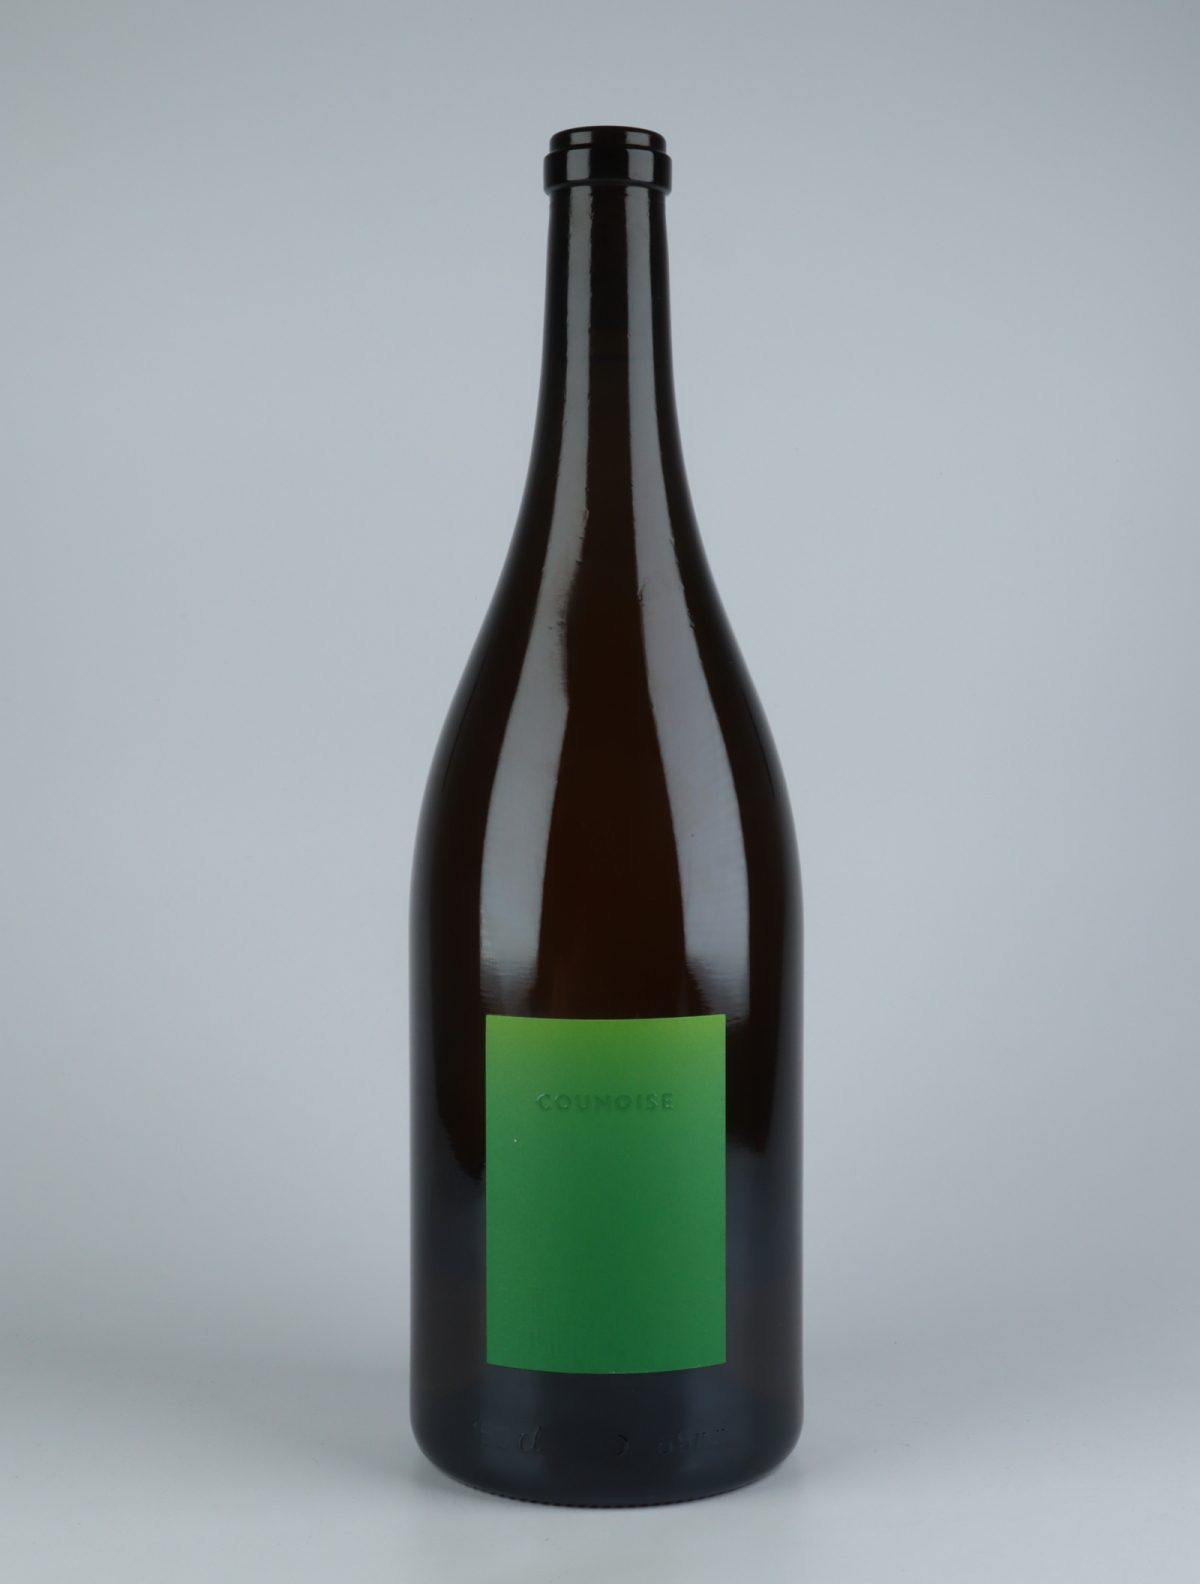 En flaske 2020 Counoise - Blanc des Noirs Hvidvin fra Les Frères Soulier, Rhône i Frankrig